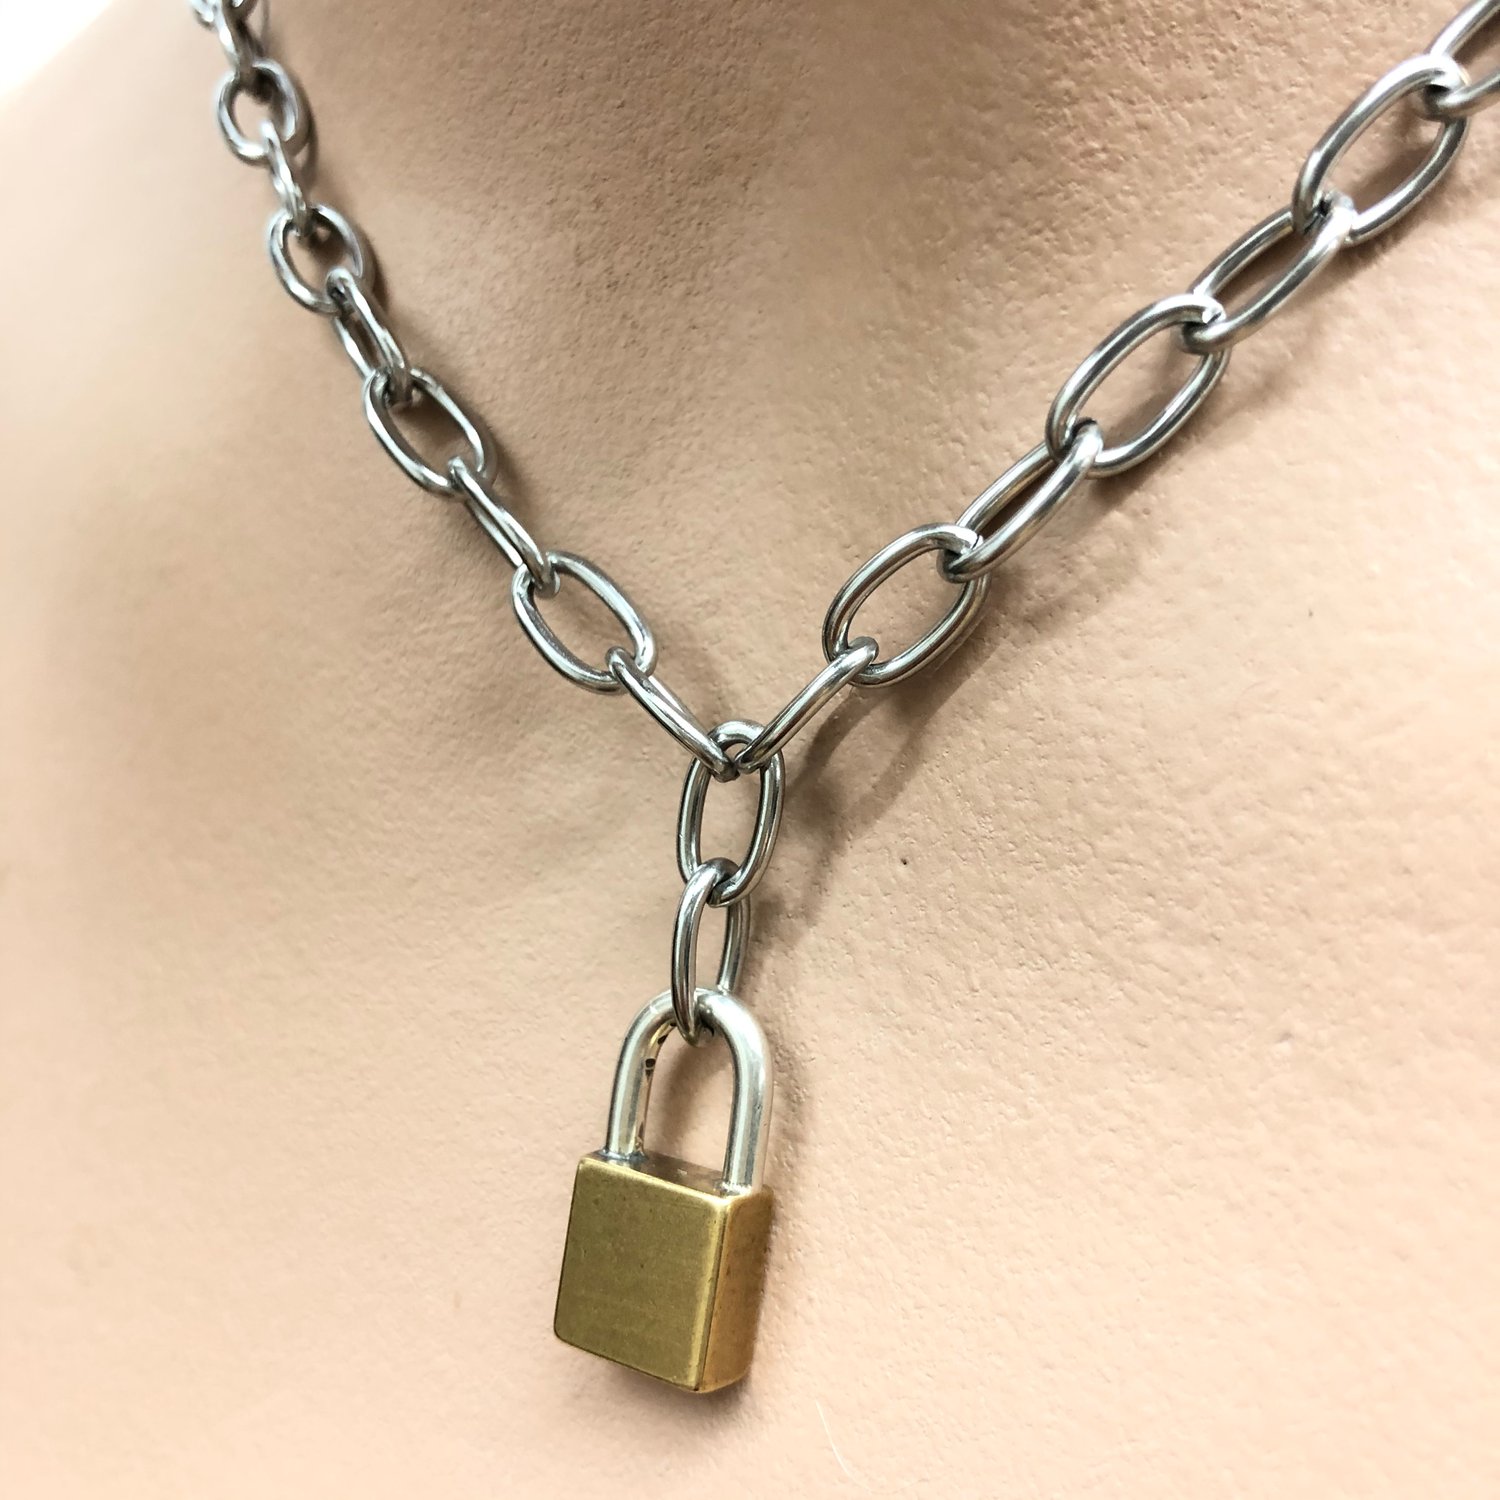 Big lock necklace